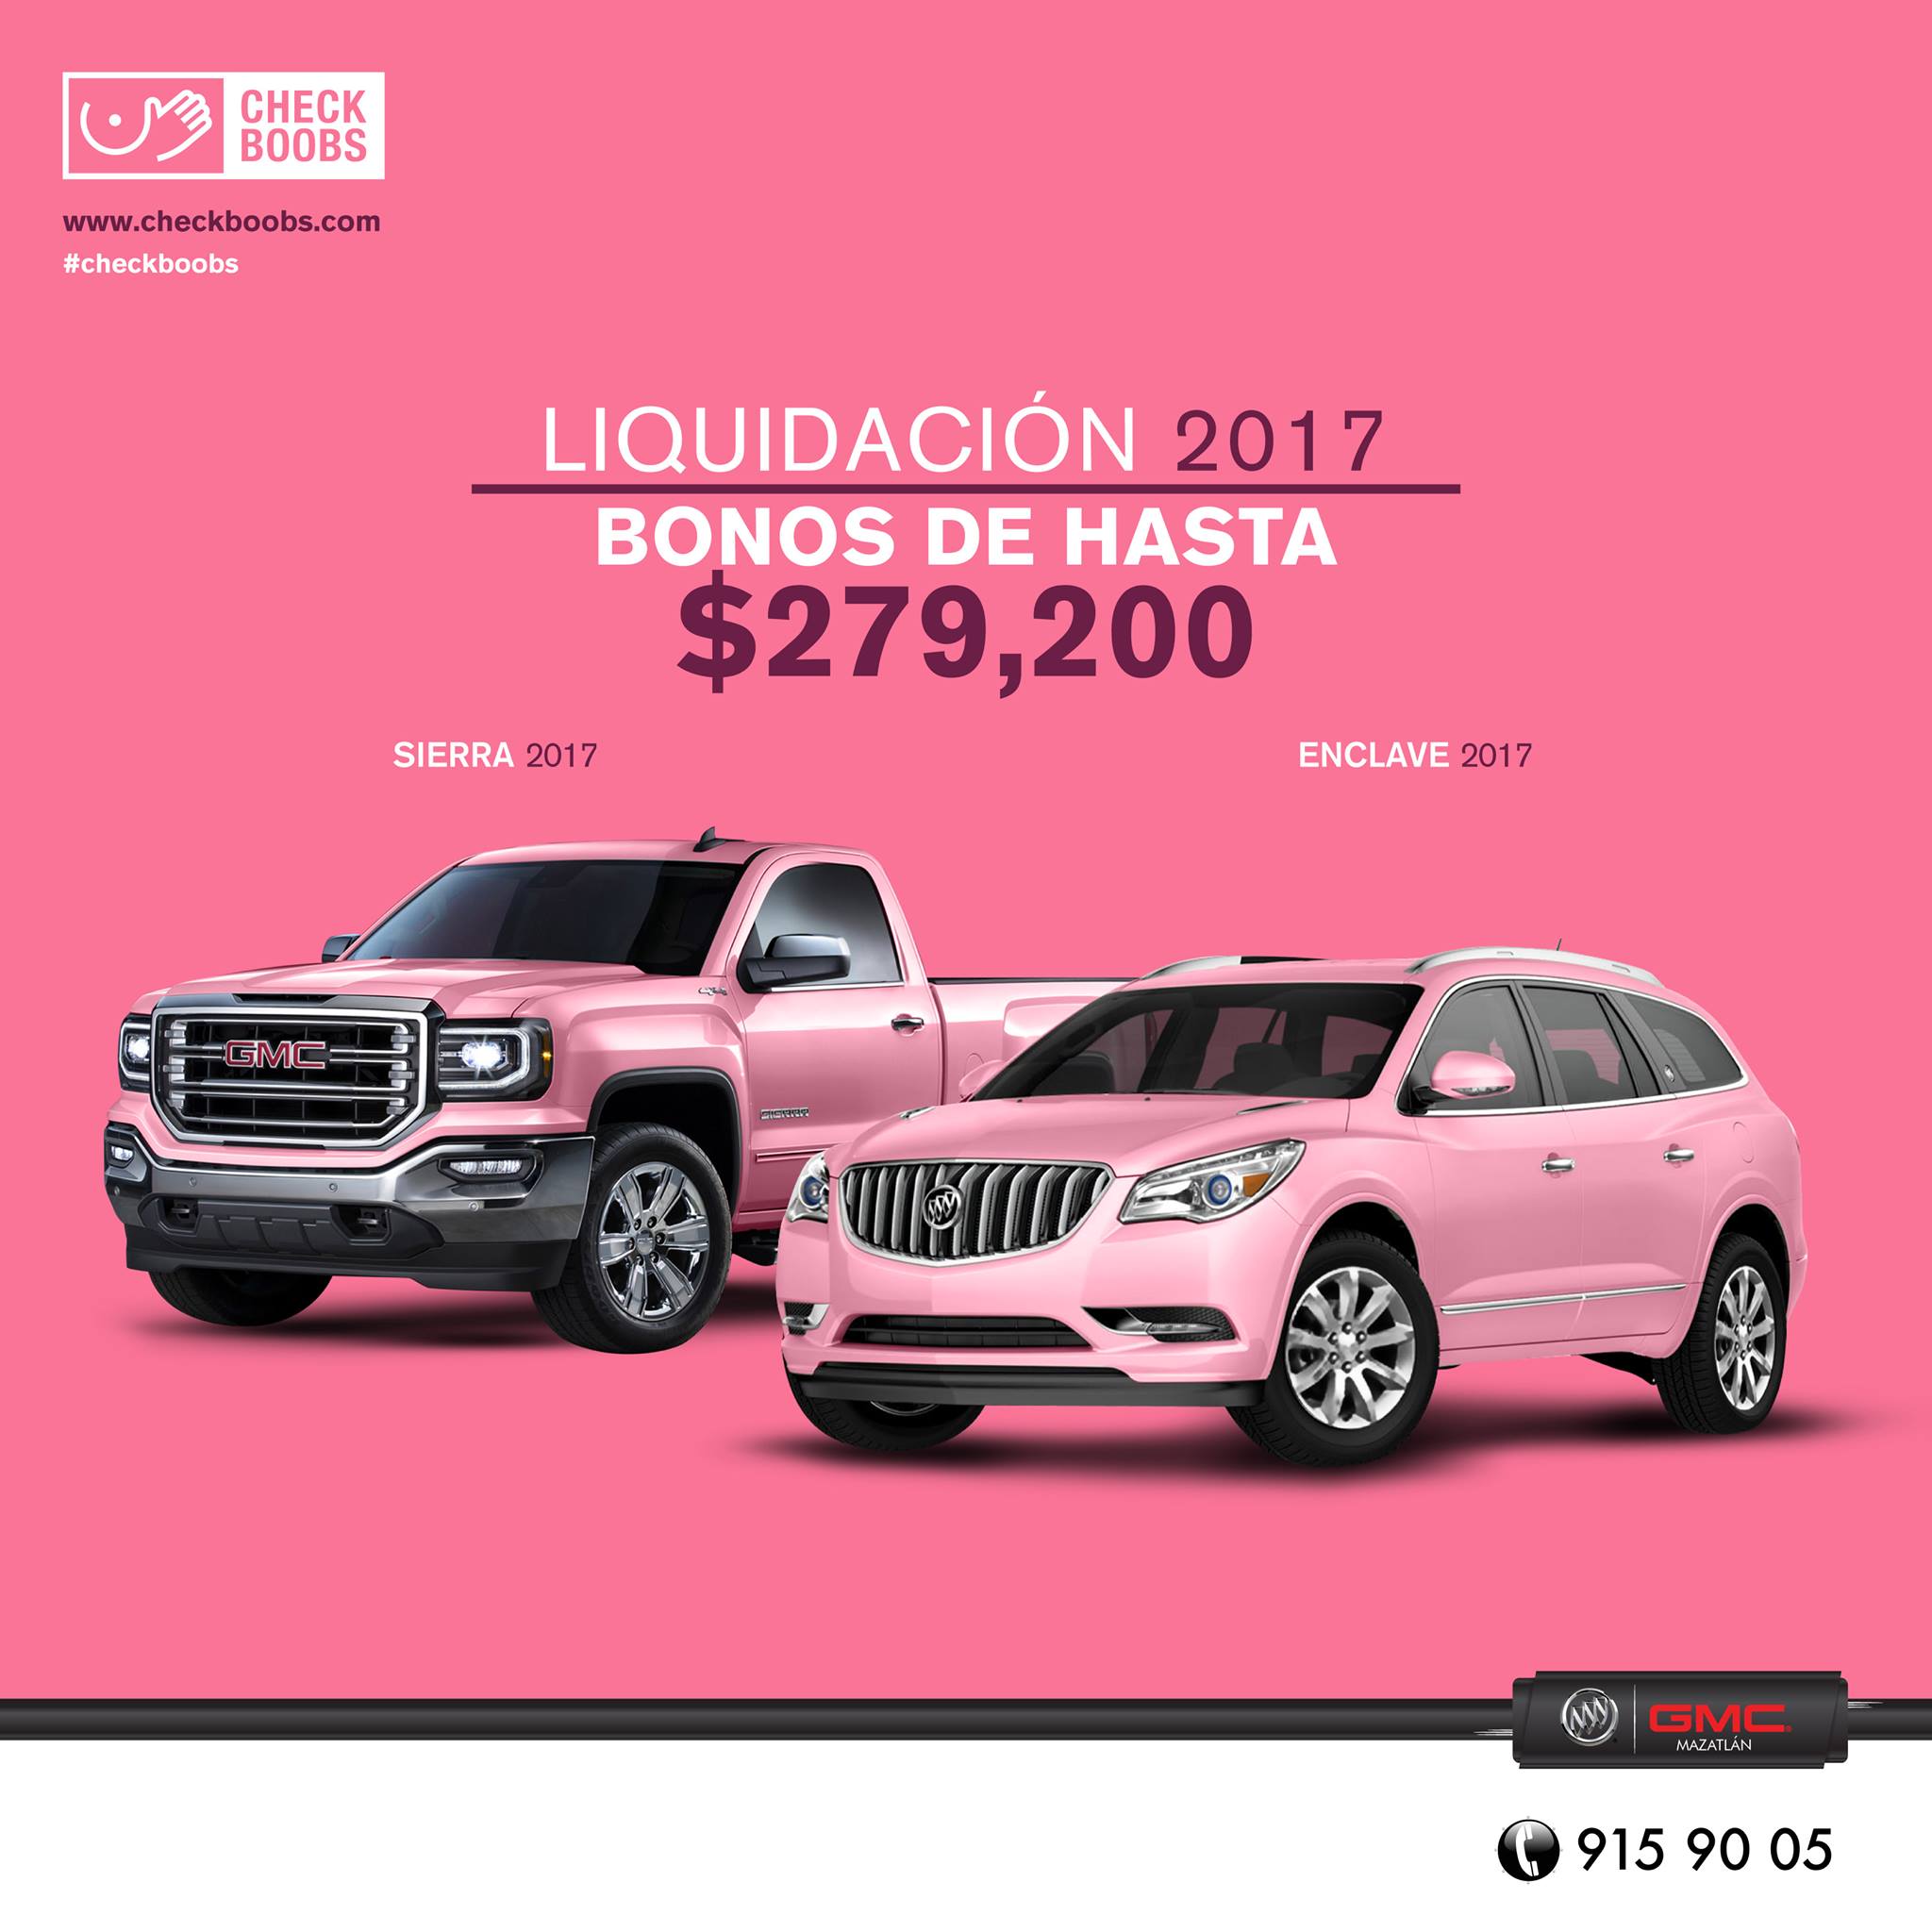 Liquidación 2017 Buick GMC con Bonos de Hasta $279,200 1